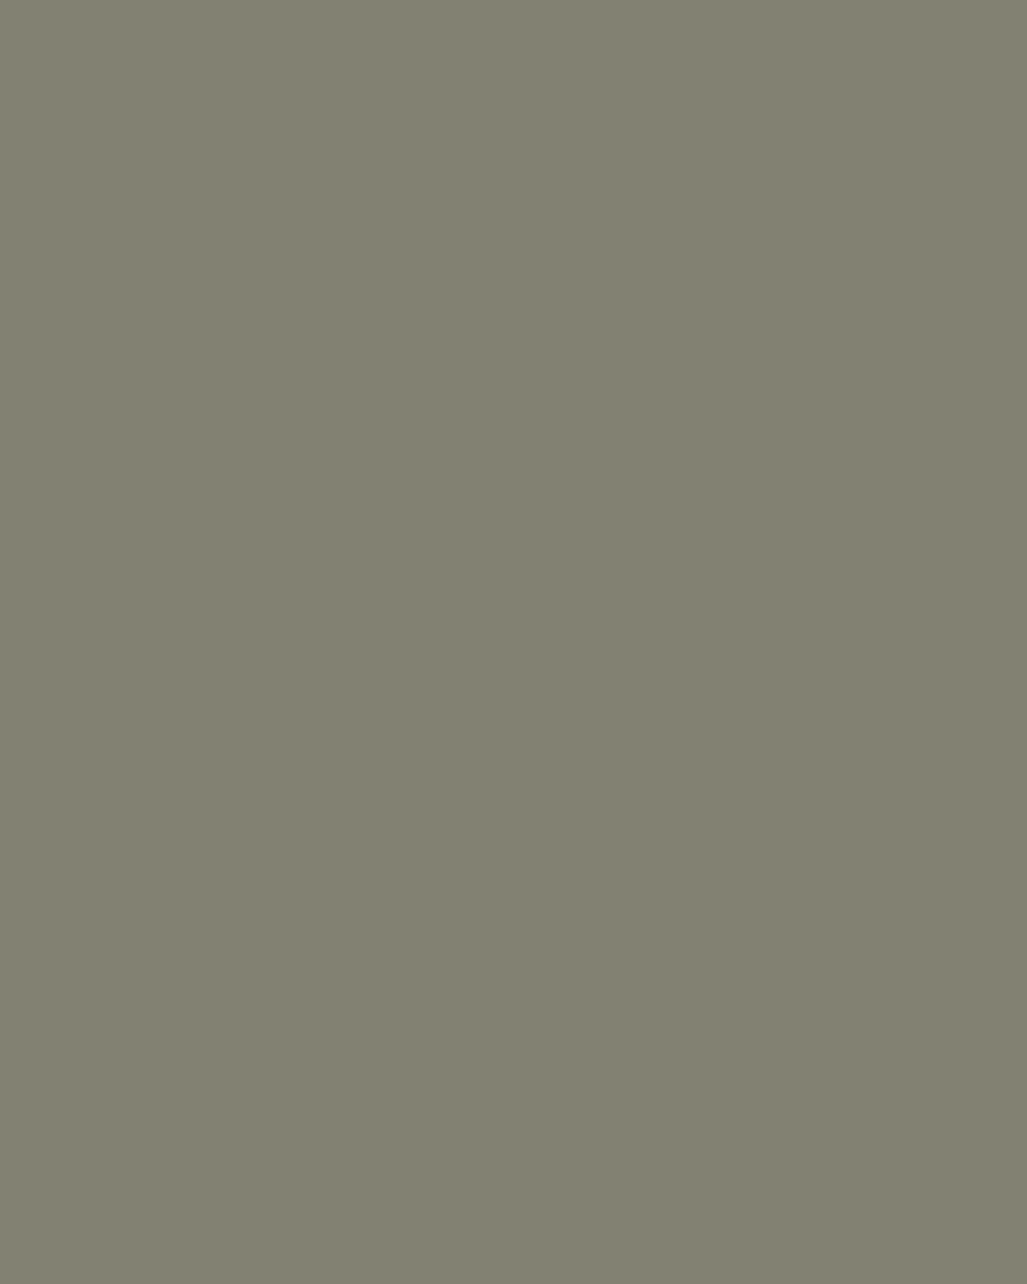 Наталья Гончарова. Рябина. Панино близ Вязьмы. 1908. Государственная Третьяковская галерея, Москва